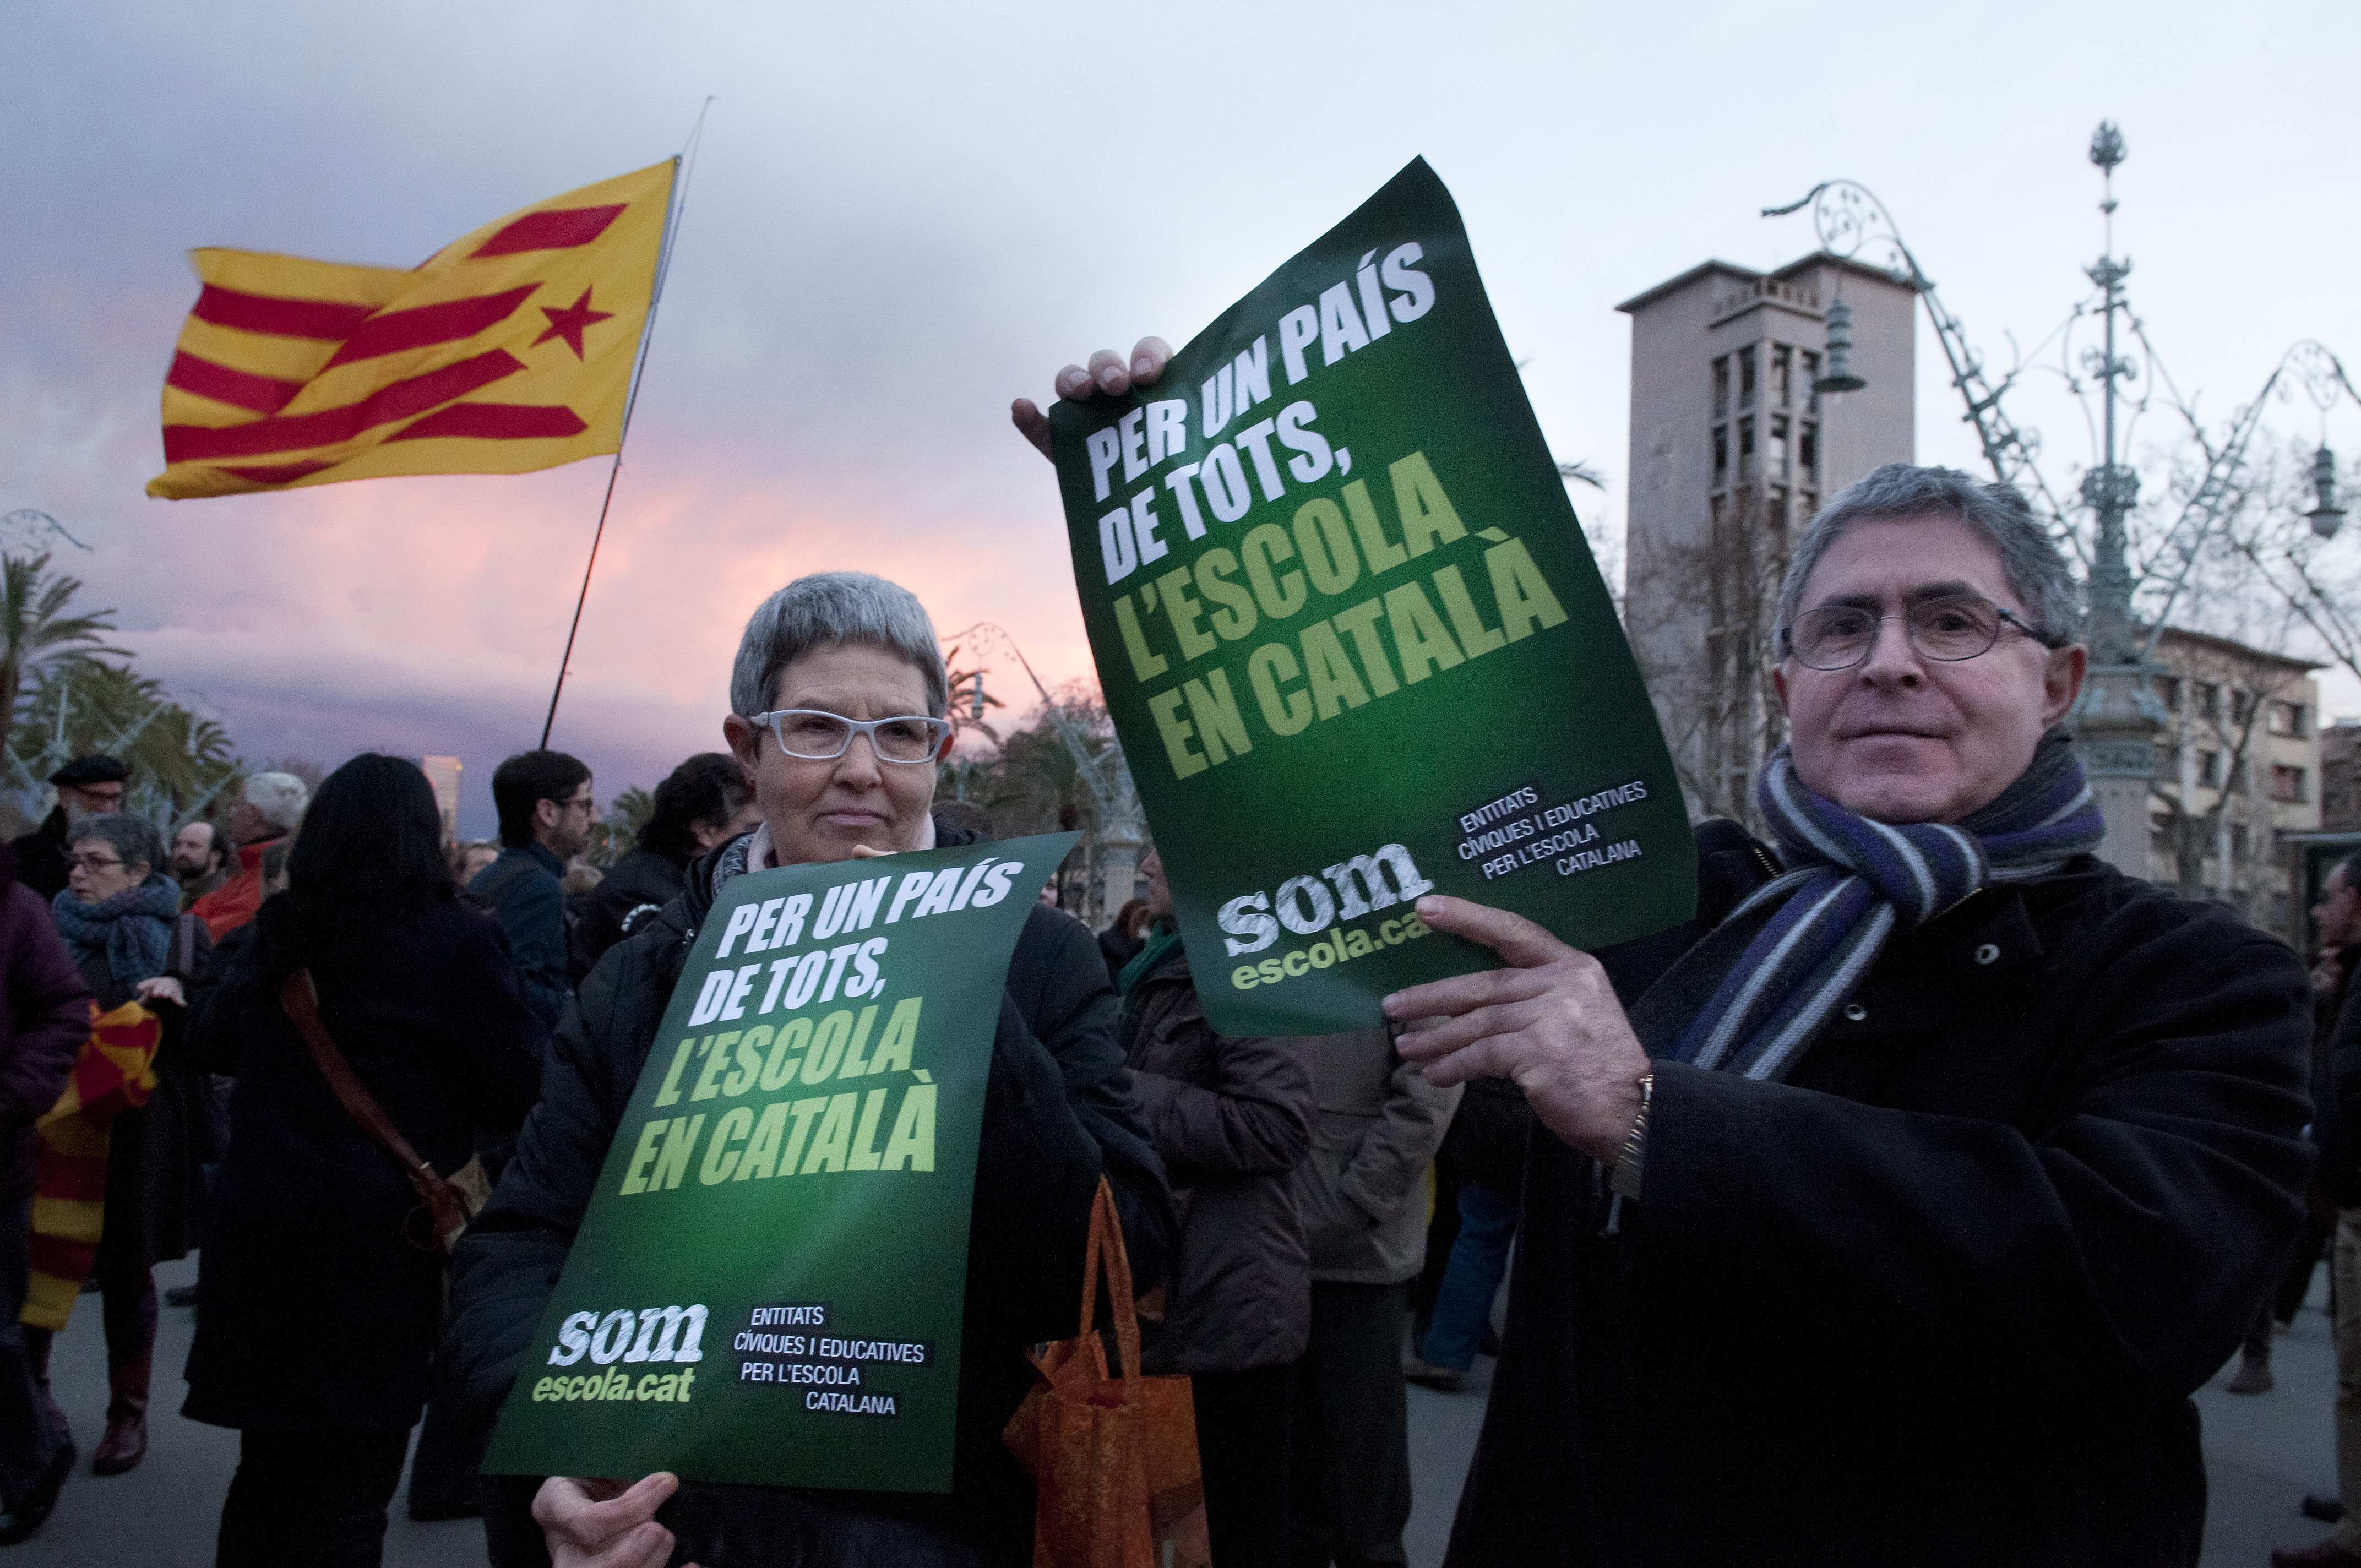 El català guanya parlants als Països Catalans